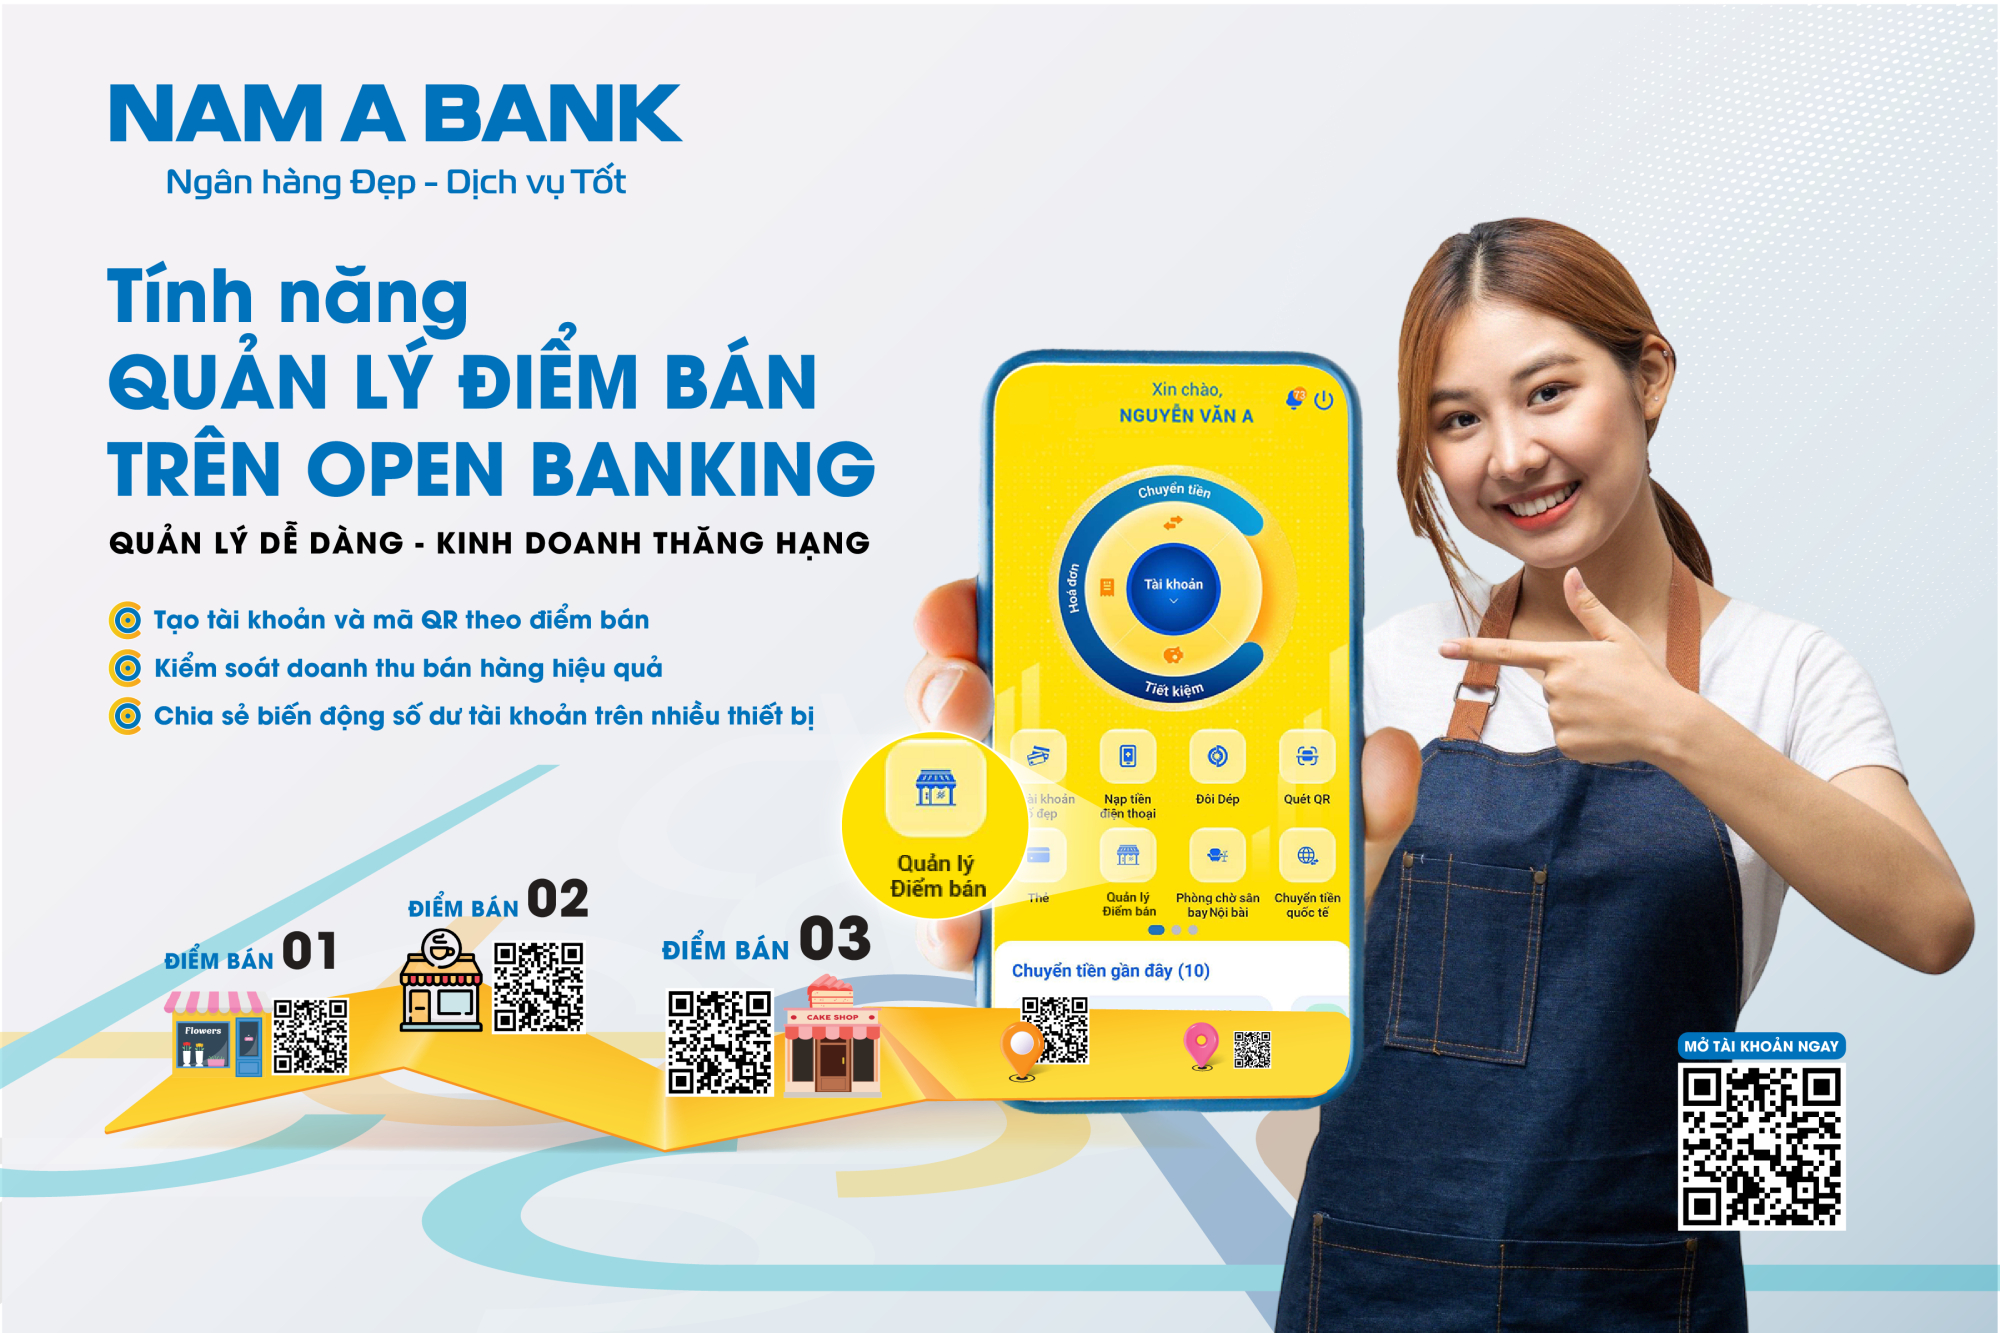 open banking them tinh nang giup chu diem ban quan ly doanh thu hieu qua hinh 1